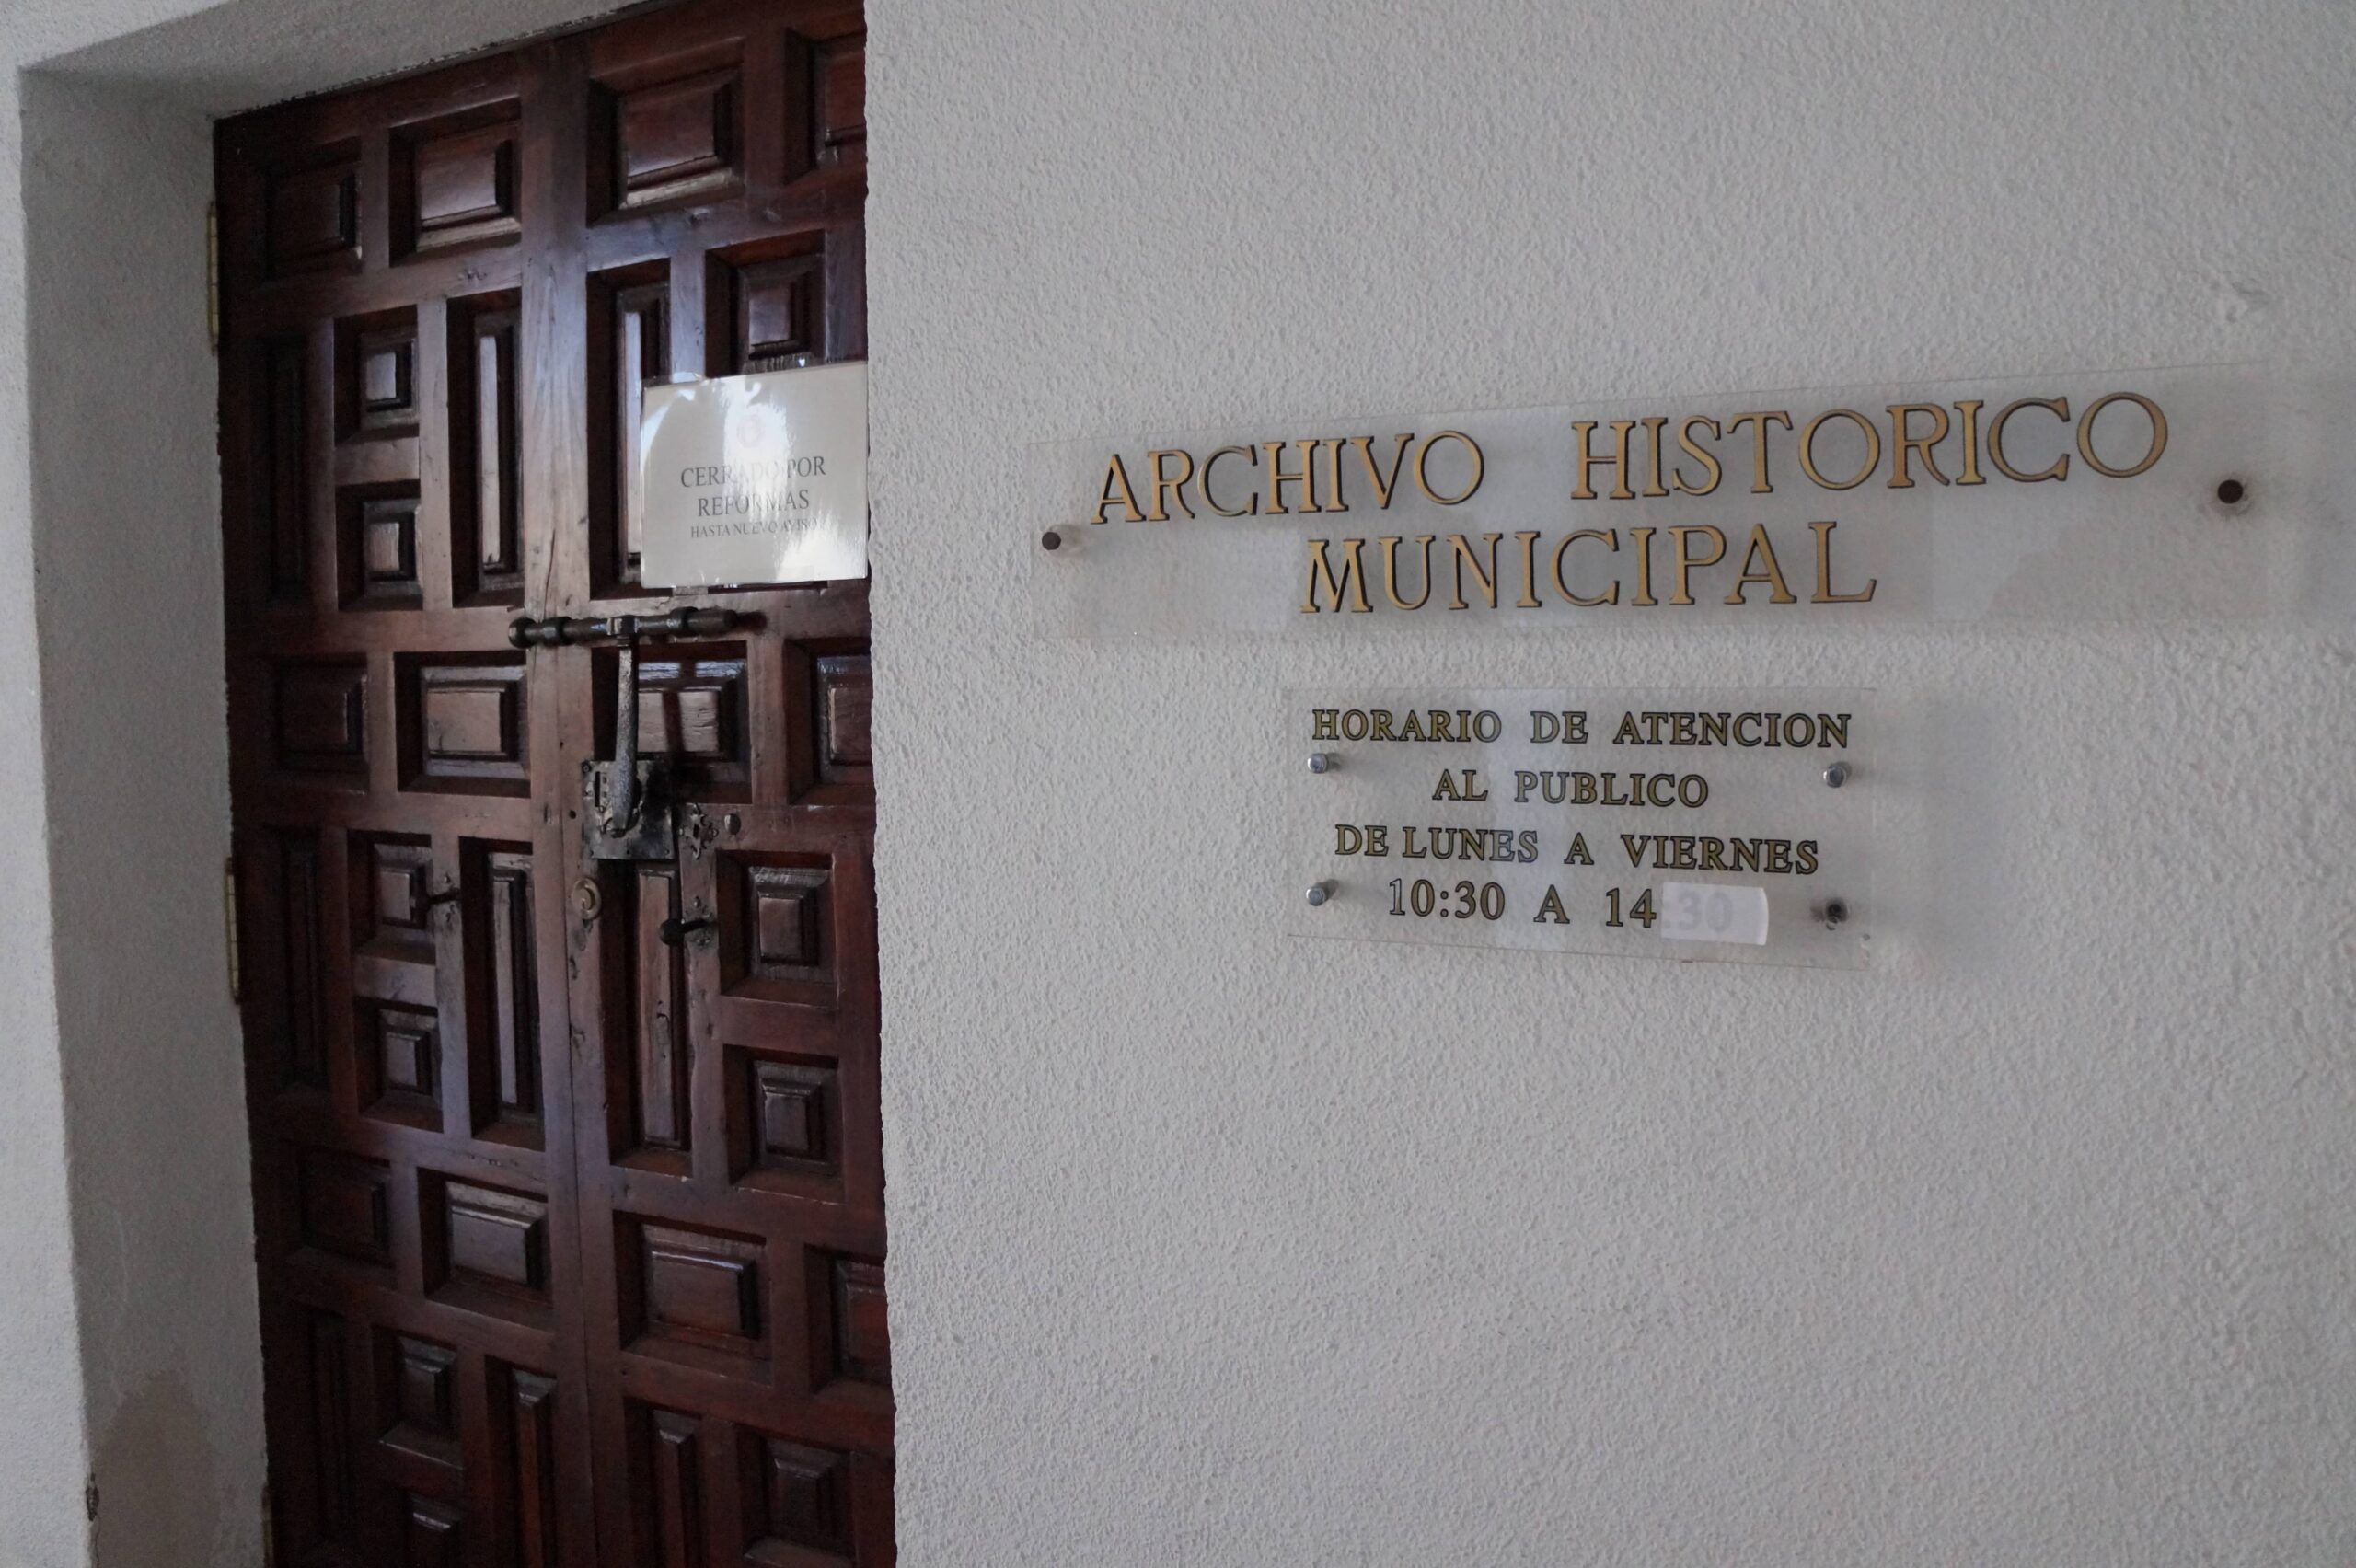 Distintos Colectivos, asociaciones y vecinos piden la apertura del Archivo Municipal de Villena